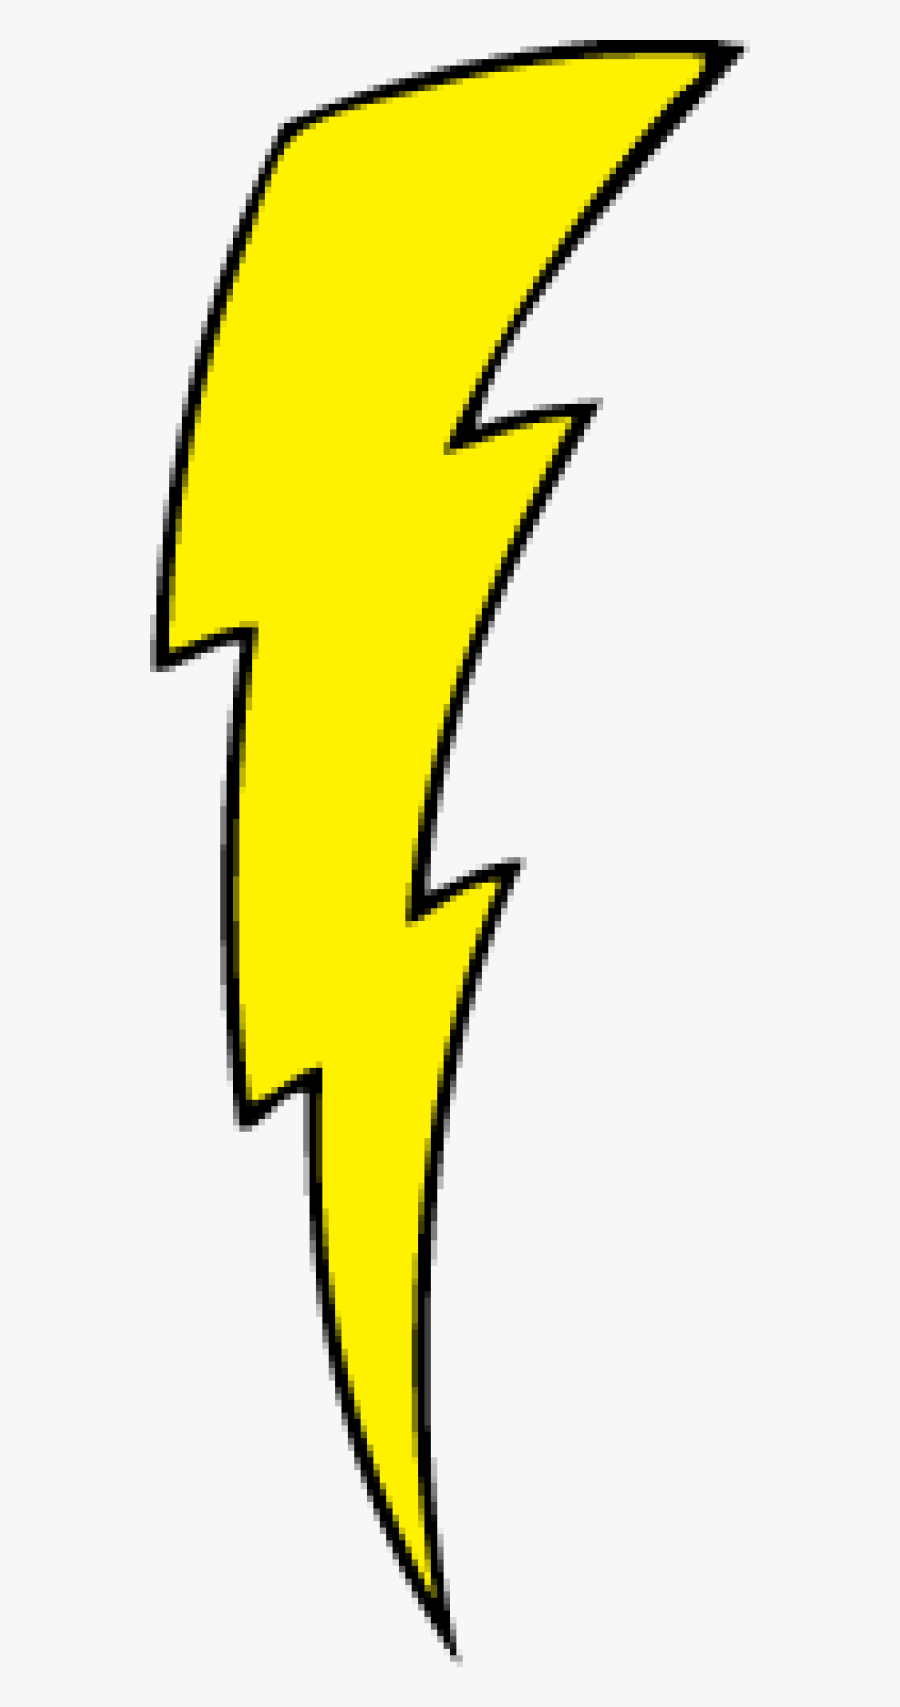 Lightning Clipart Lightning Bolt - Lightning Bolt Designs Png, Transparent Clipart